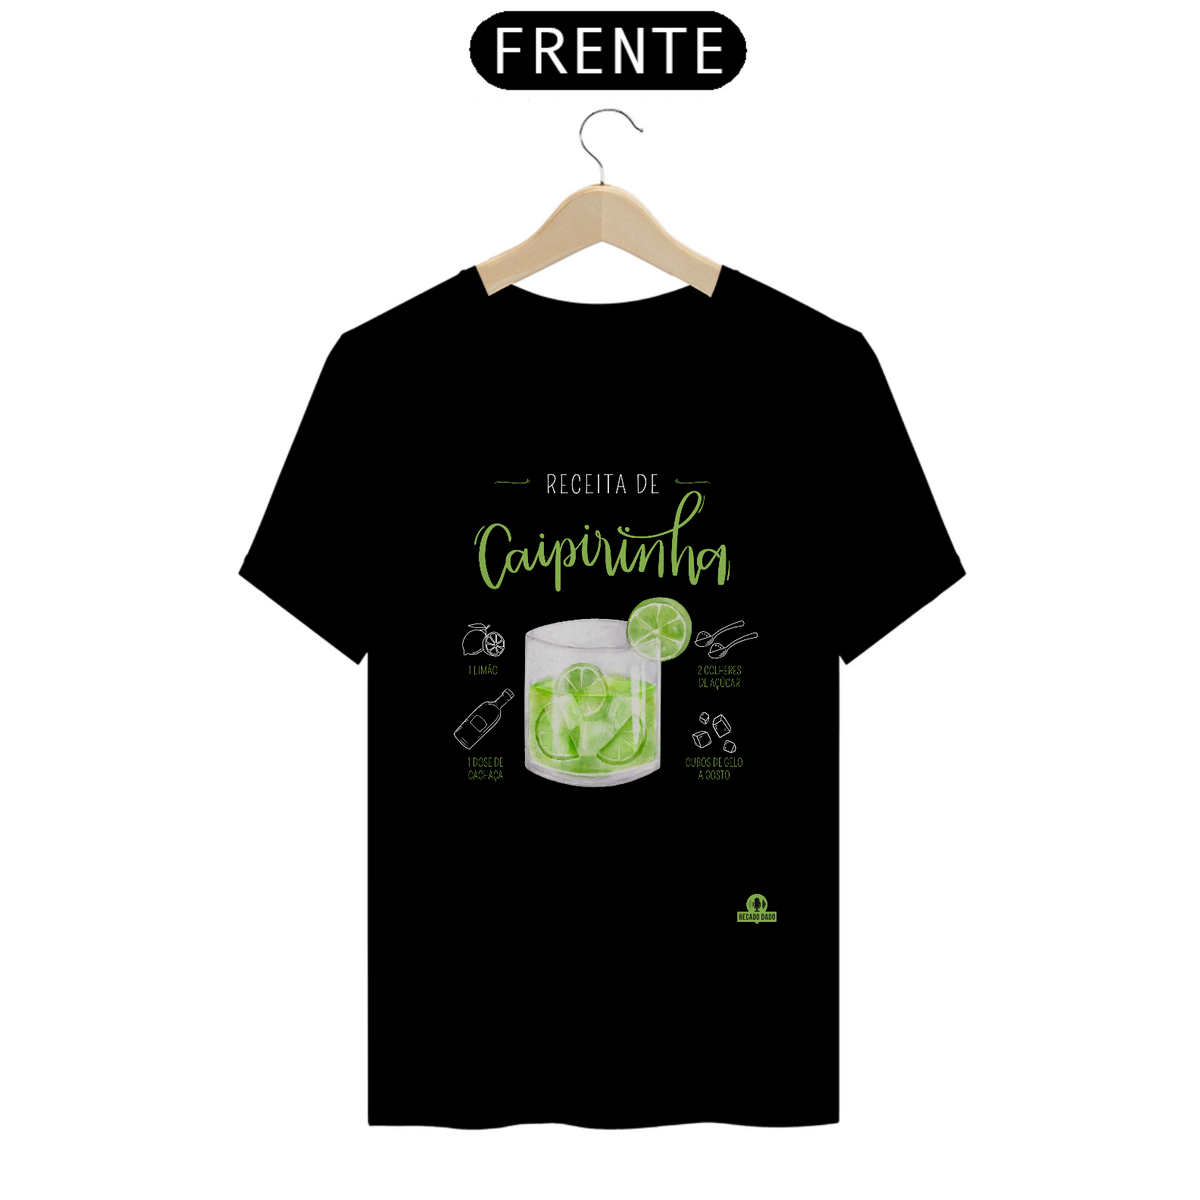 Nome do produto: Camiseta receita de caipirinha, para os amantes deste drink genuinamente brasileiro.